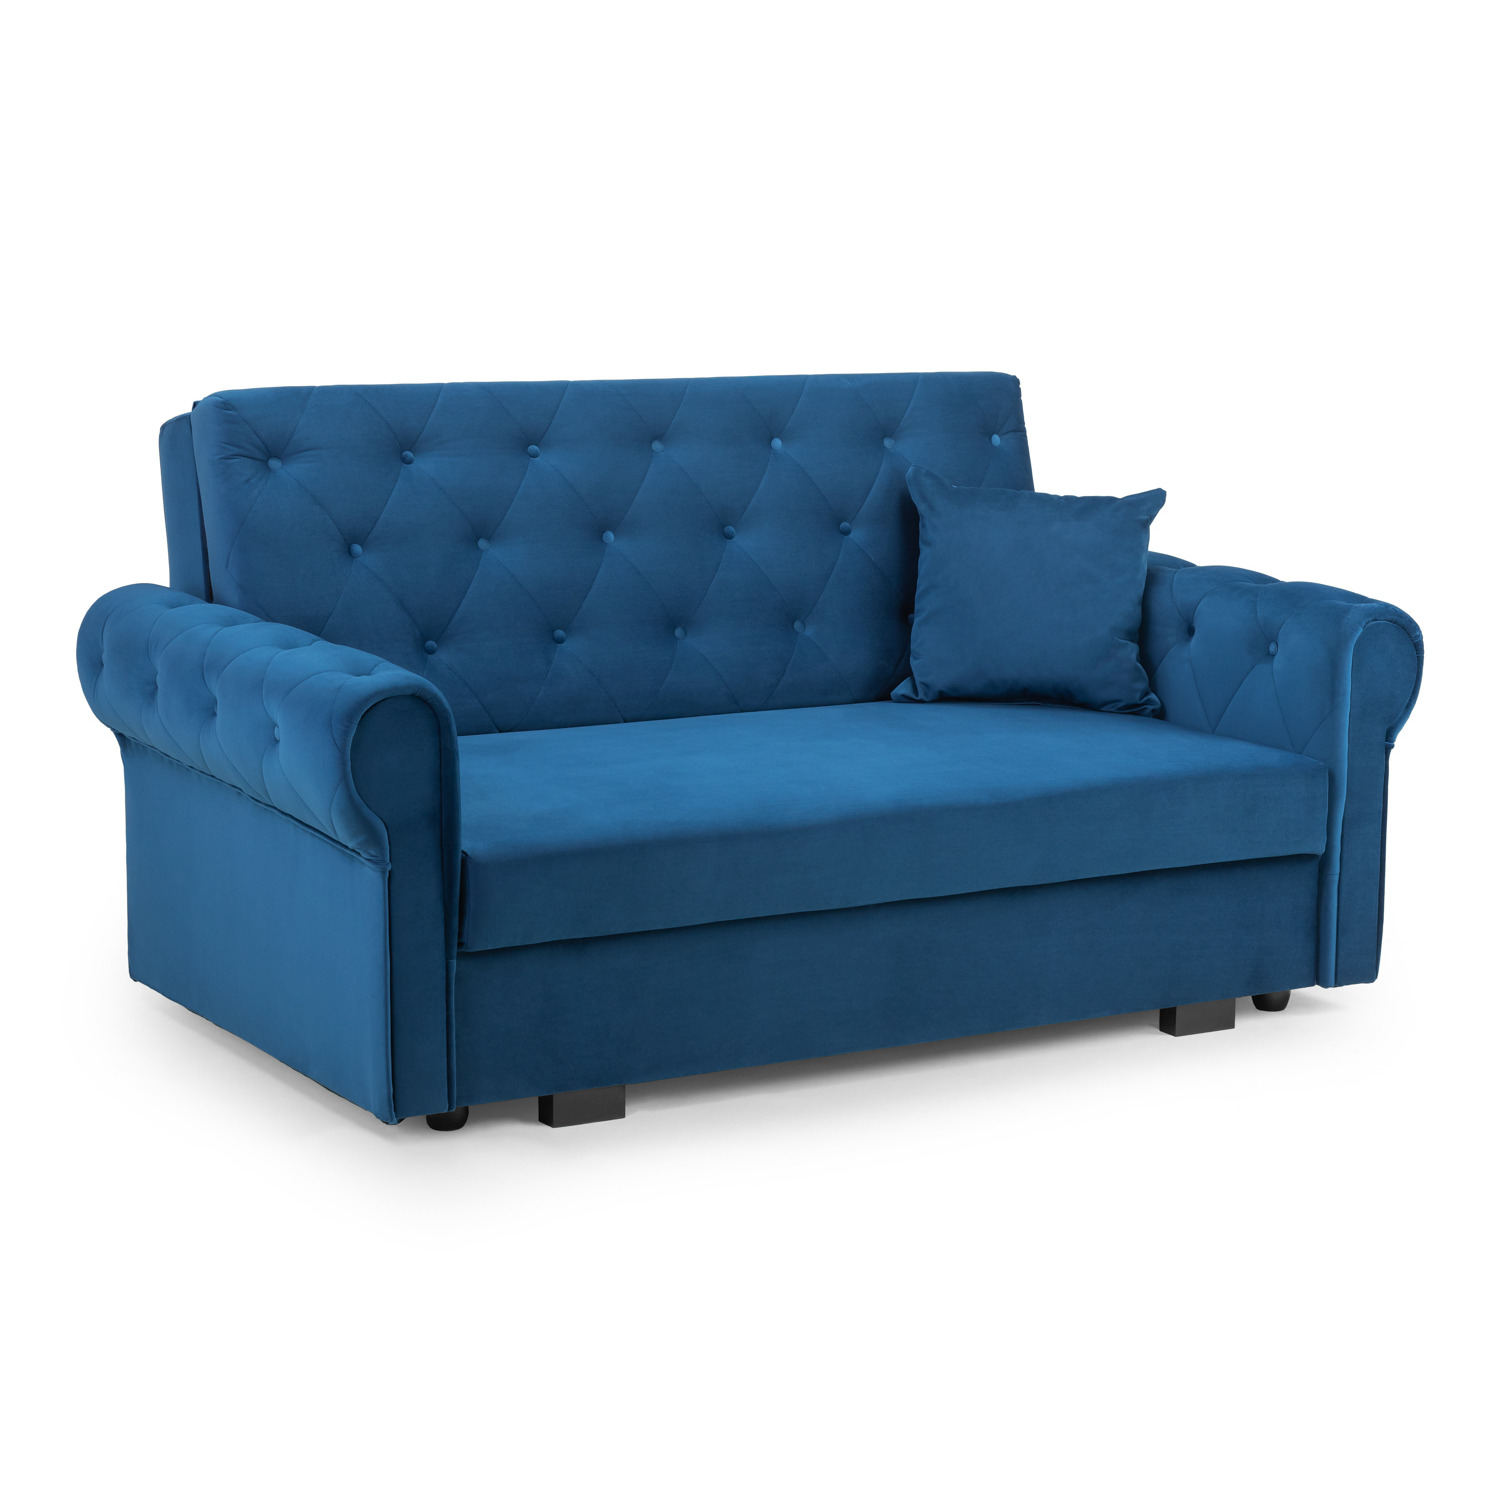 Rosalind Sofabed Plush Blue 2 Seater - image 1